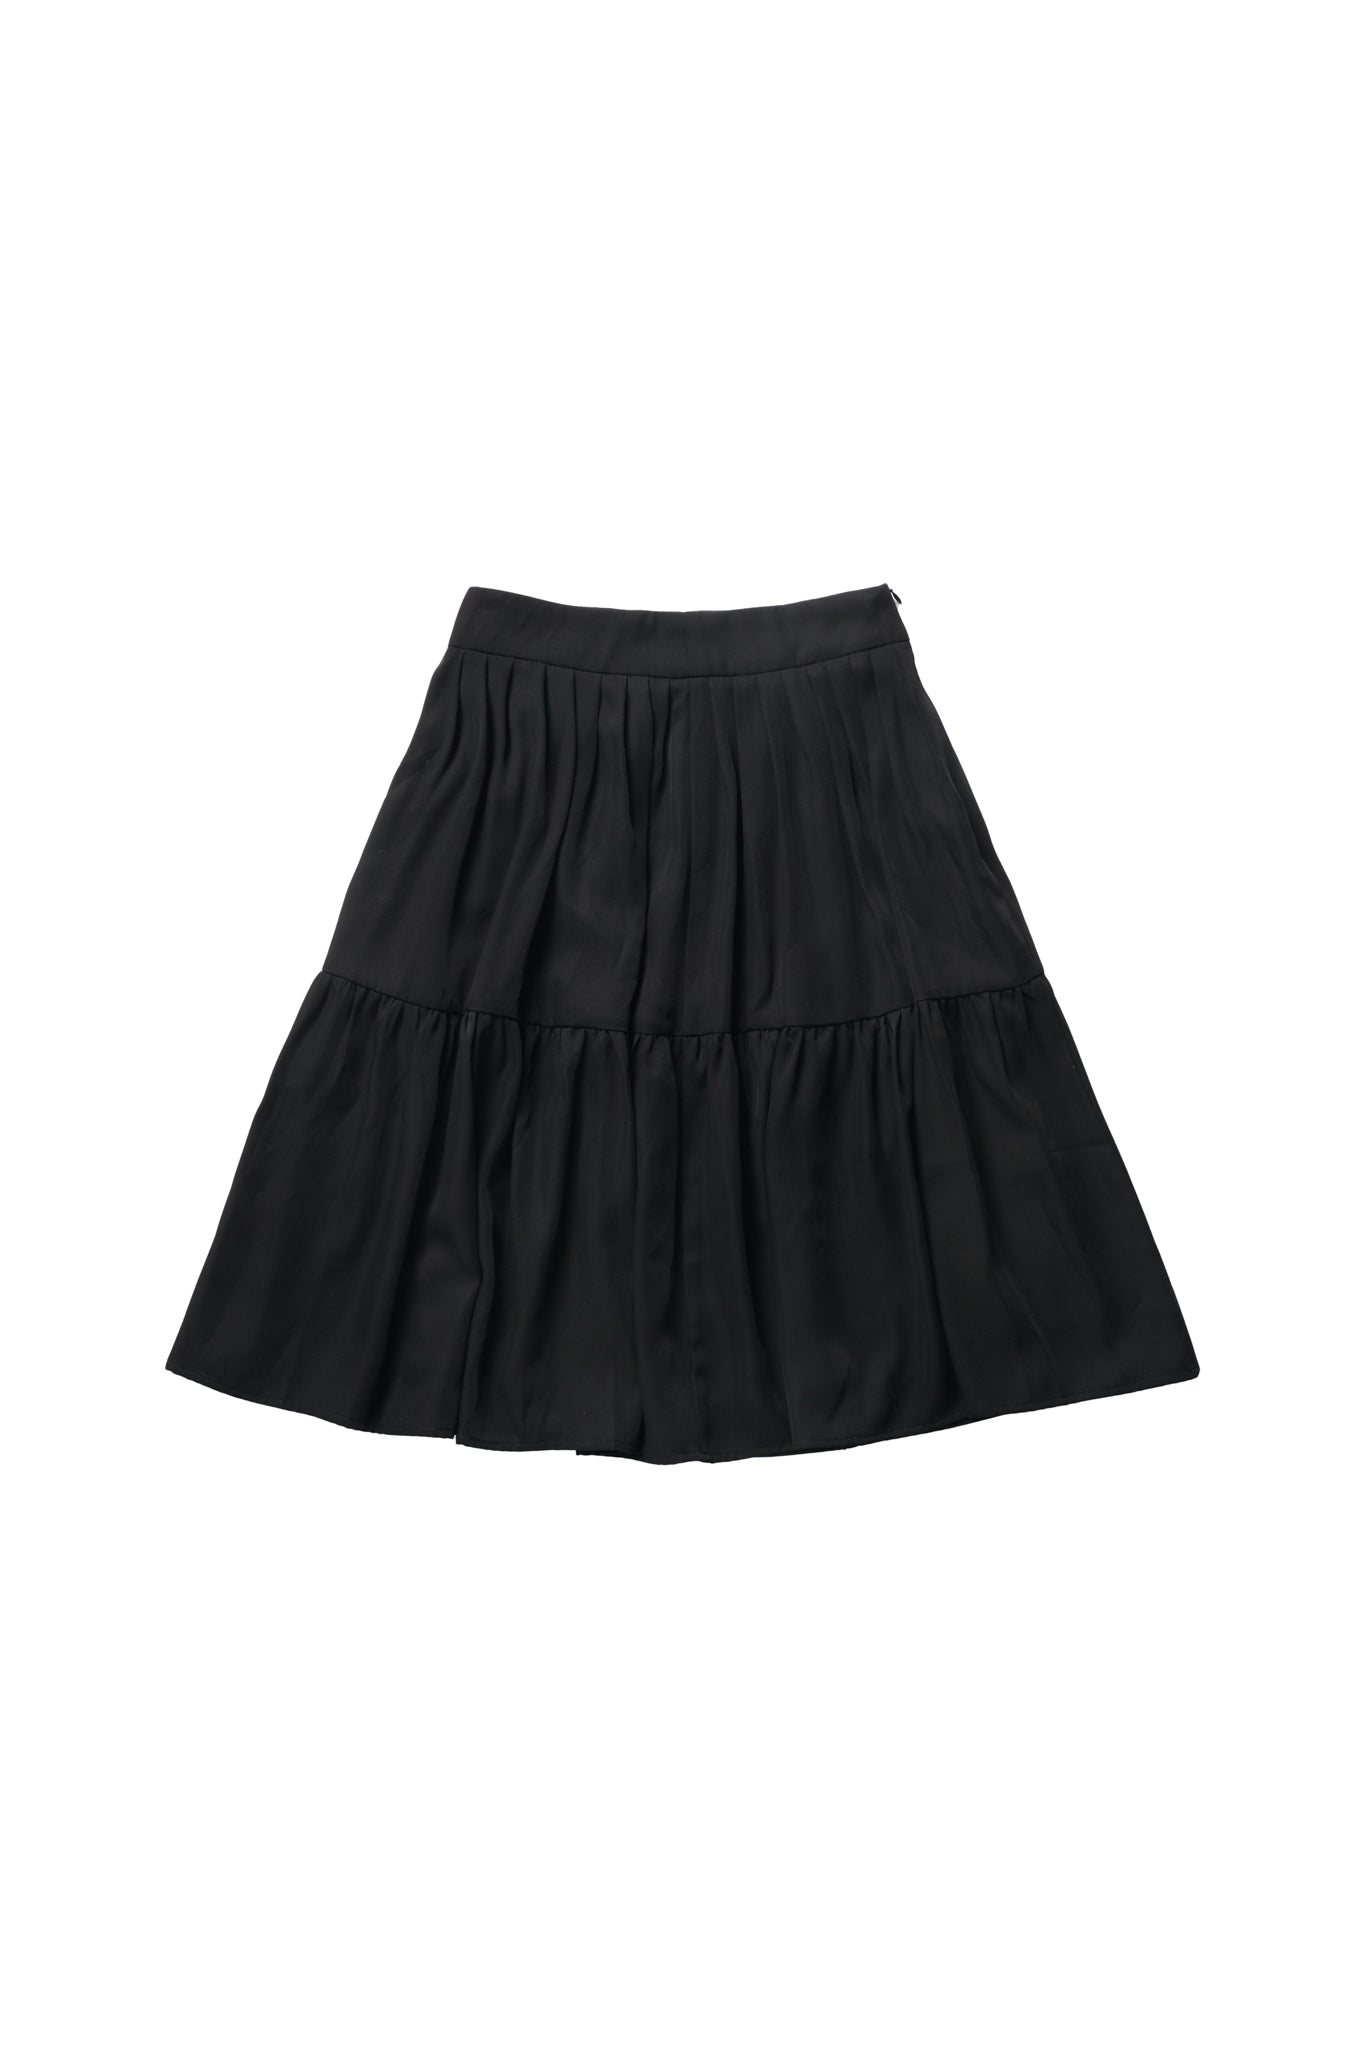 Tessa Skirt in Black #1682B